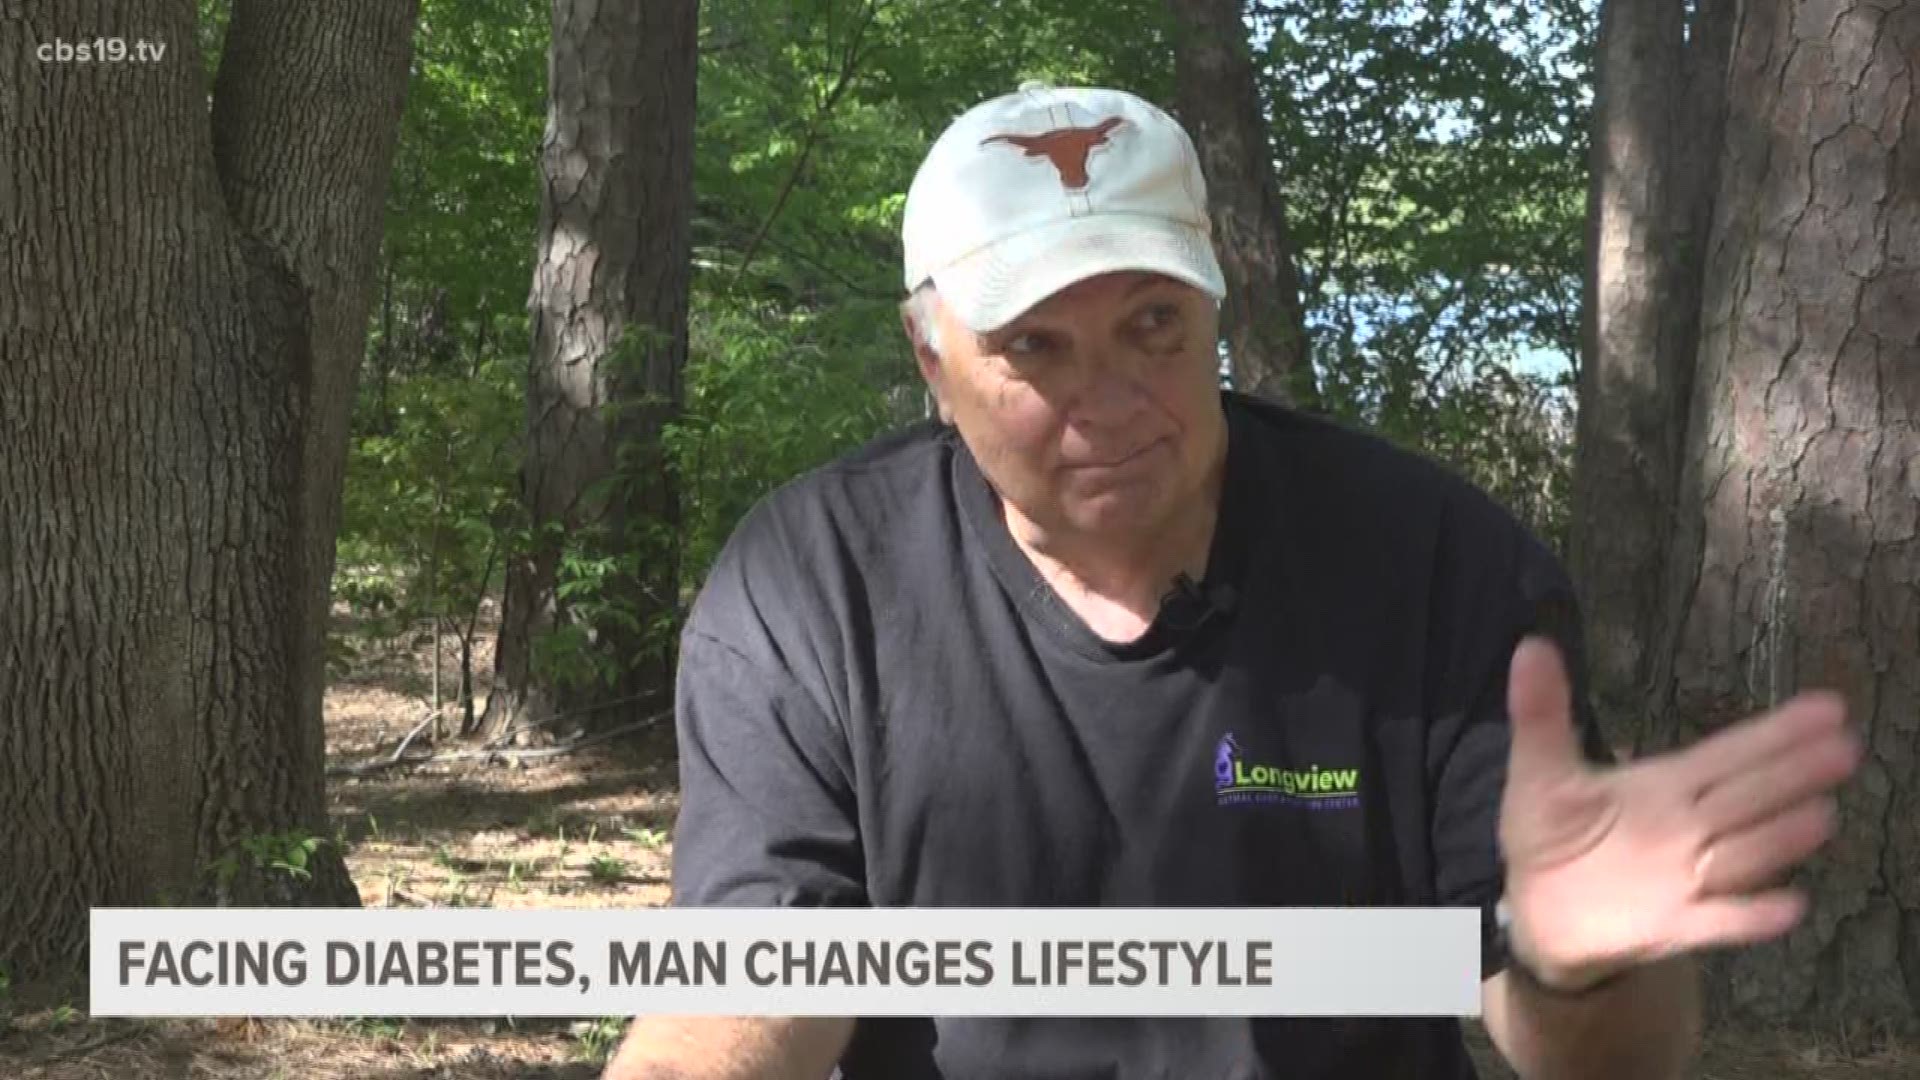 Man loses 50 pounds to avoid diabetes